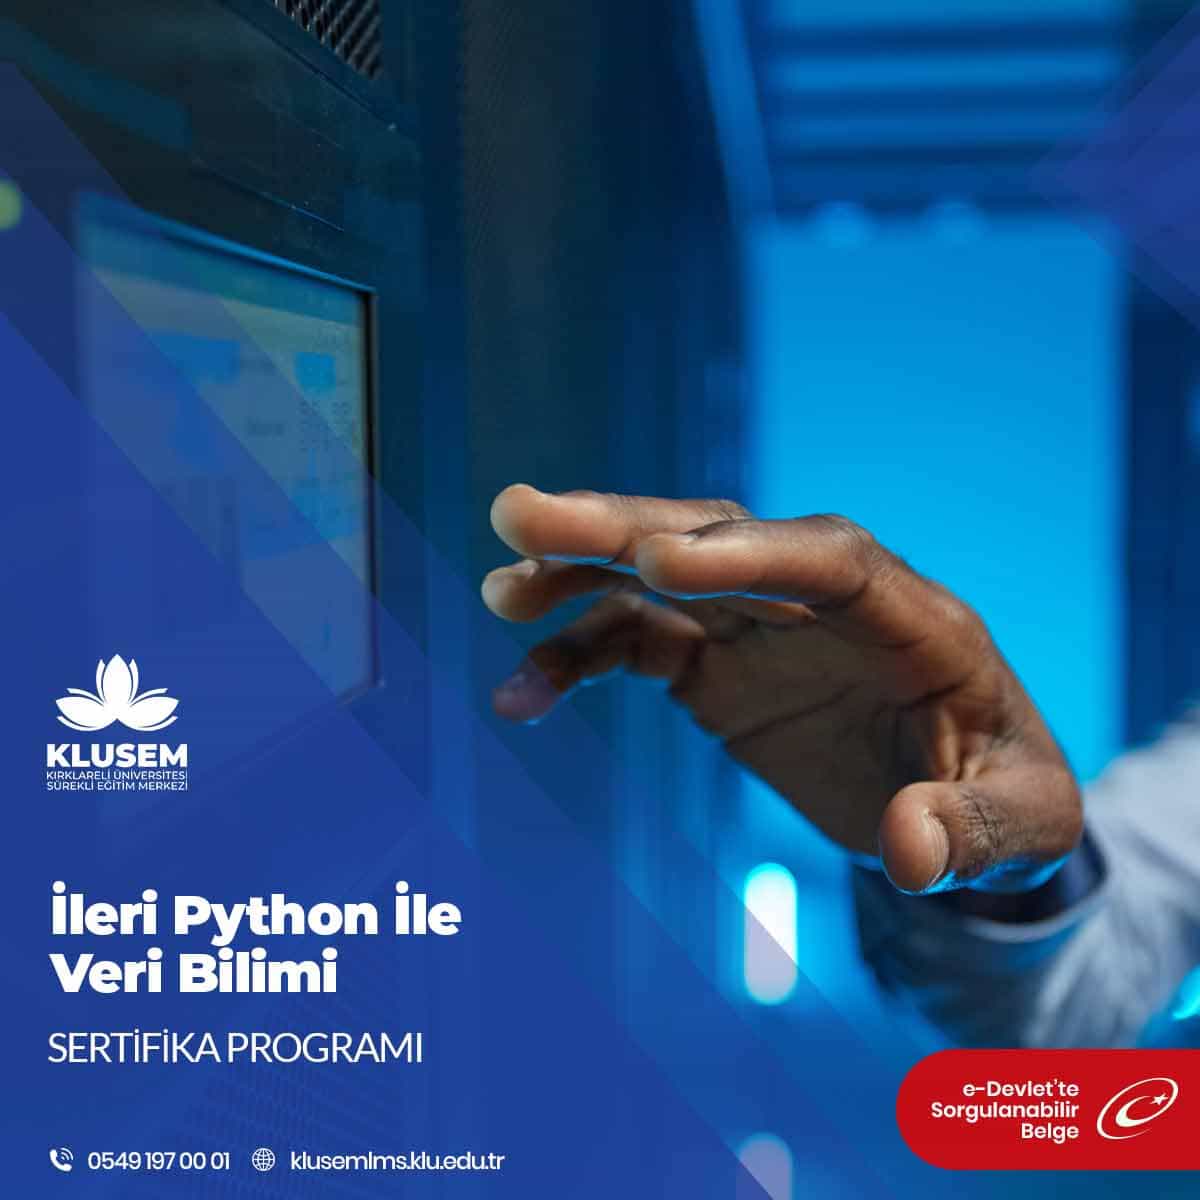 Python programlama dilini kullanarak verileri analiz etme, model oluşturma, tahmin yapma ve bilgi çıkarma süreçlerini içeren bir disiplindir.